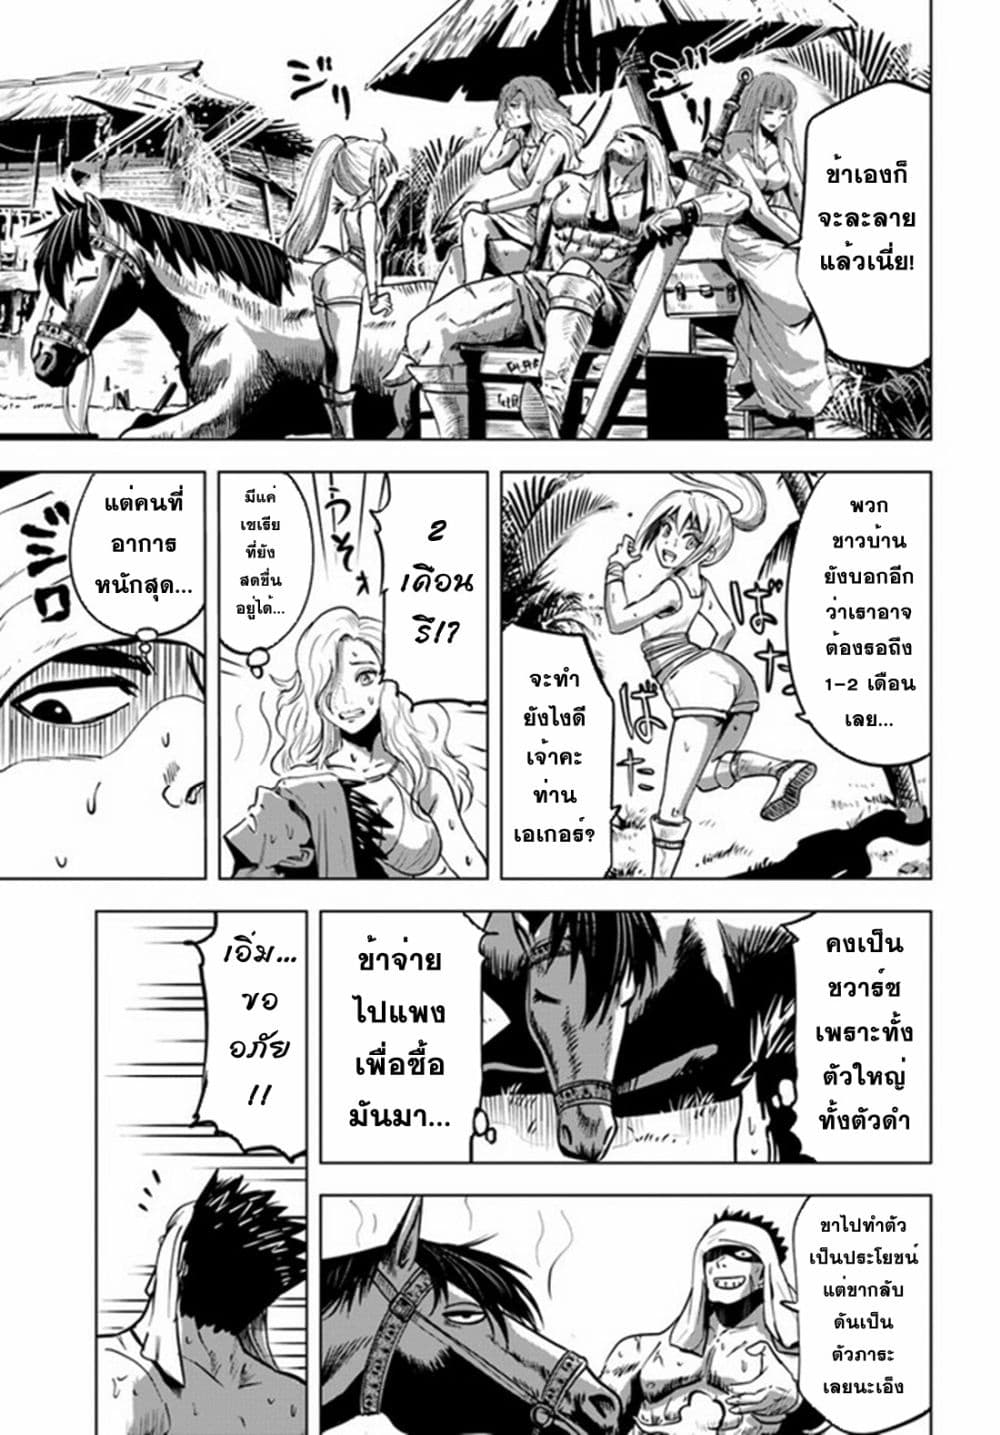 Oukoku e Tsuzuku Michi dorei Kenshi no Nariagari Eiyutan (Haaremu Raifu) - Road to the Kingdom Slave Swordsman the Rise of Heroes - Harem Life 23-23